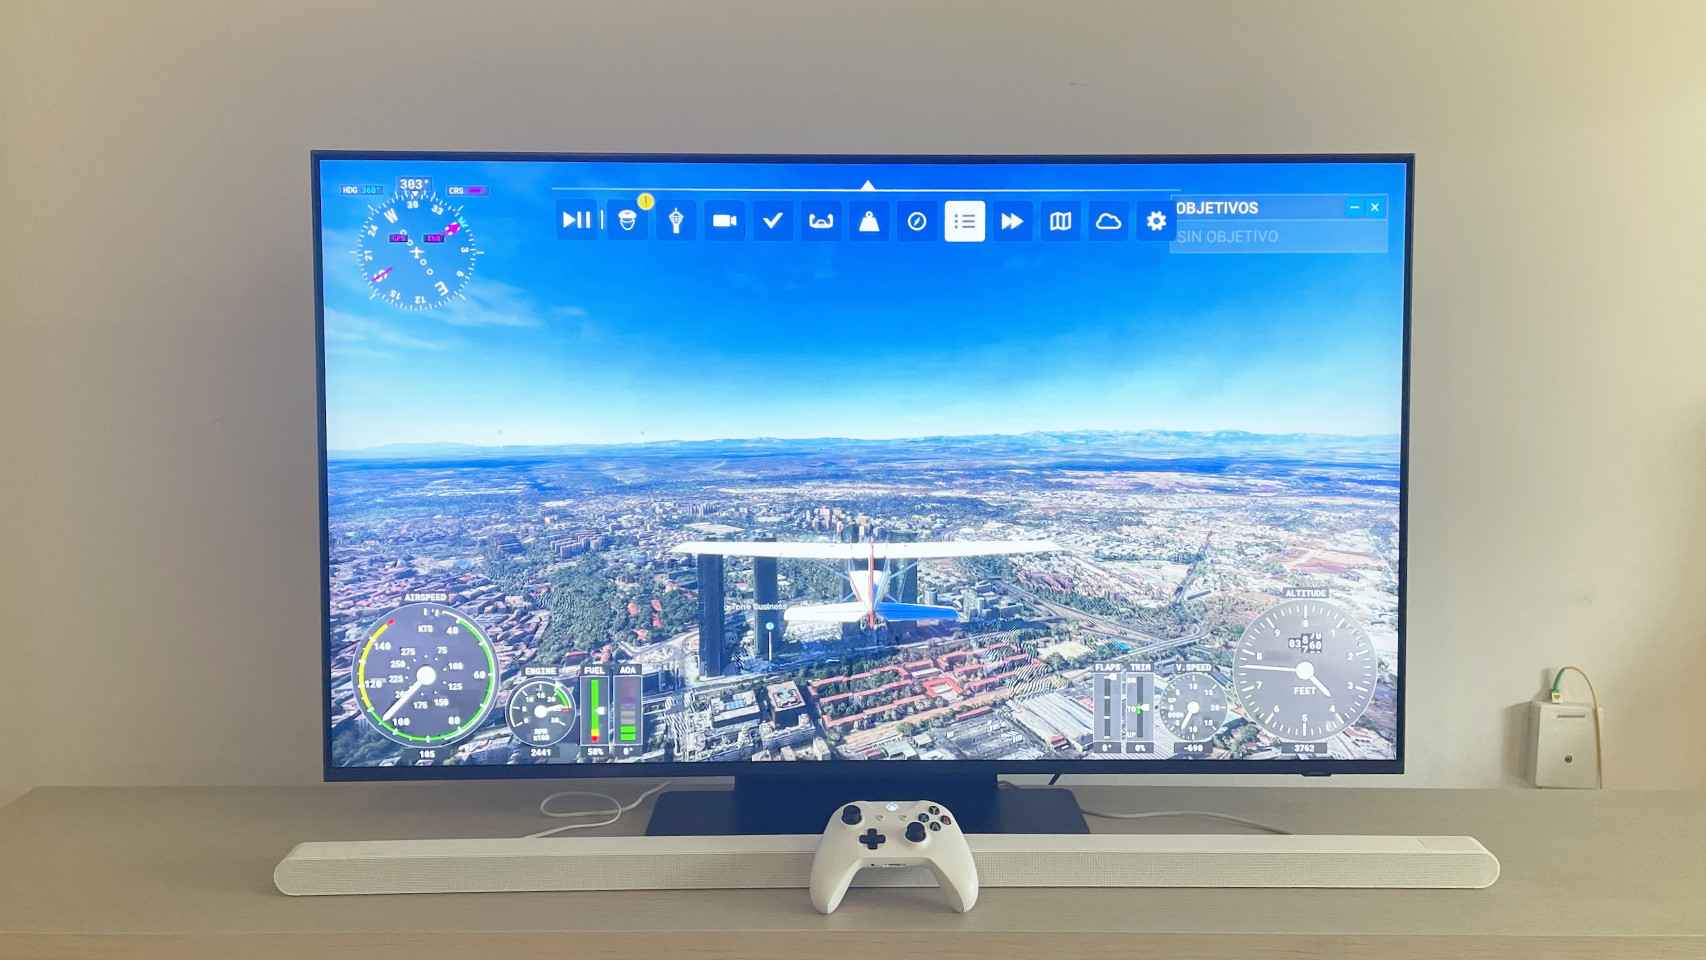 El juego Microsoft Flight Simulator ejecutándose en la nube en el televisor.